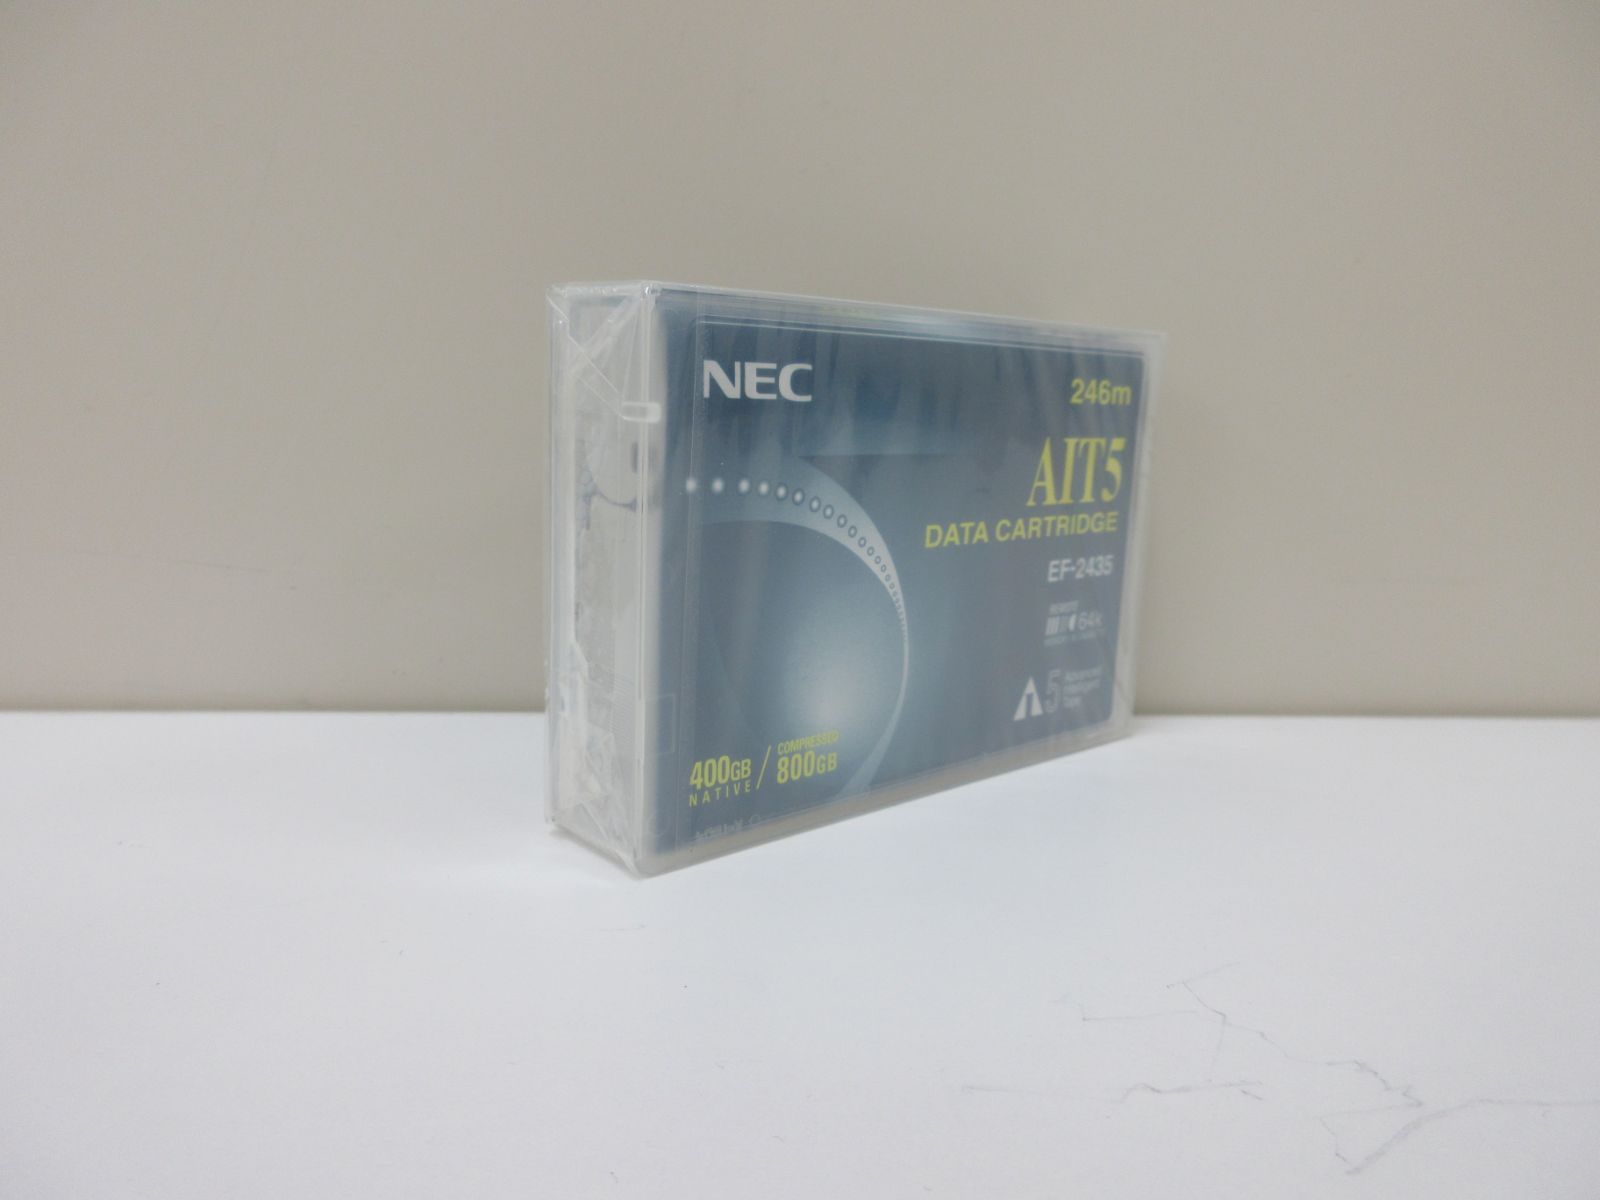 NEC AIT-5 データカートリッジ 400GB/800GB 10本セット【R5-305】 - メルカリ